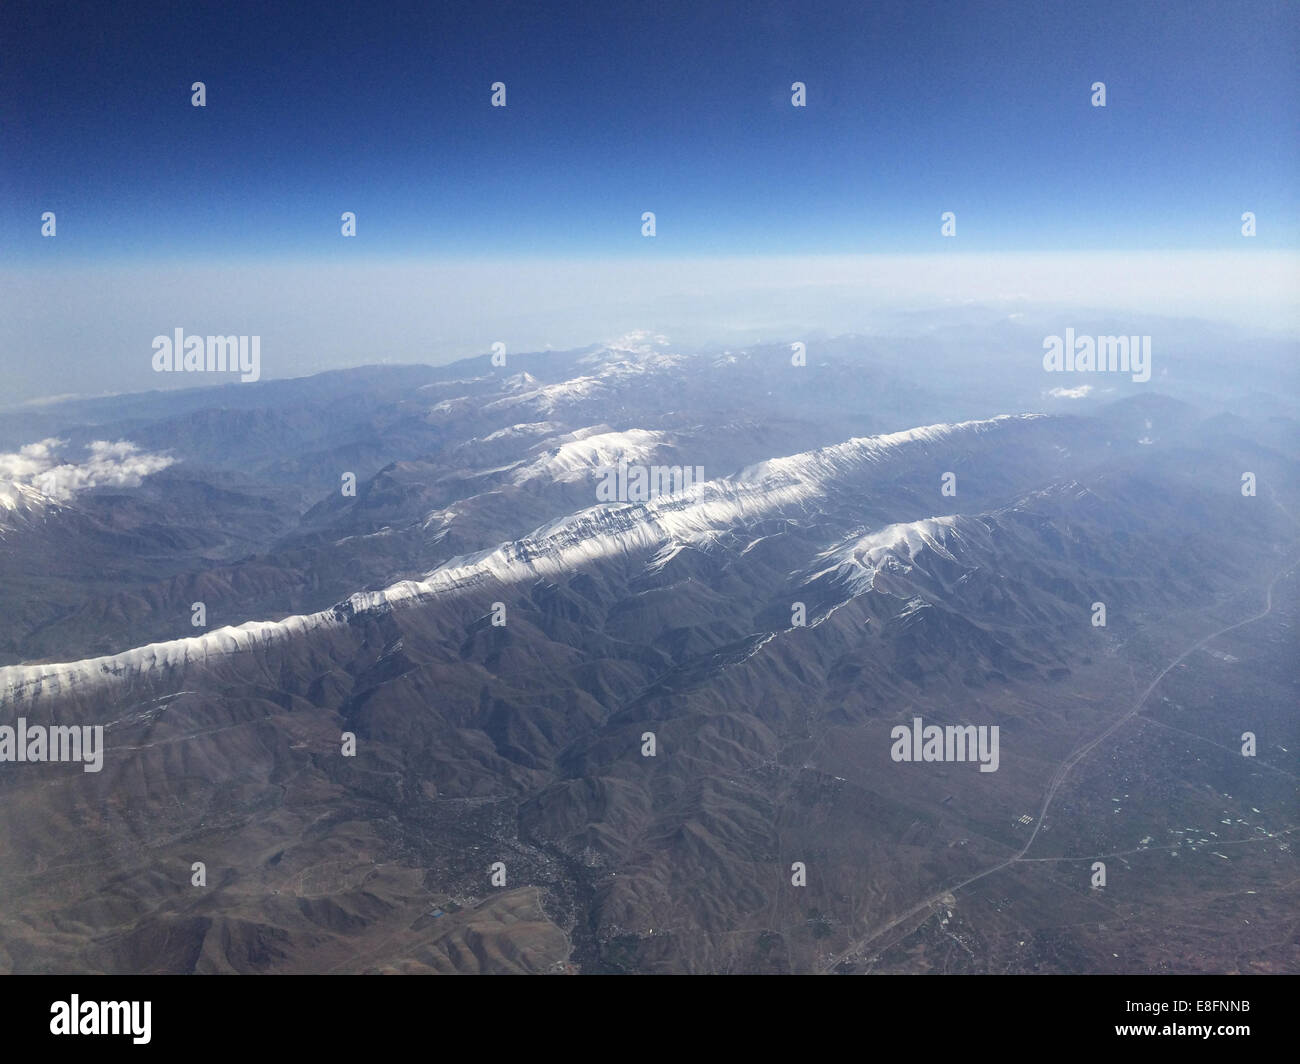 Iran, Aerial view of Alborz mountain range Stock Photo